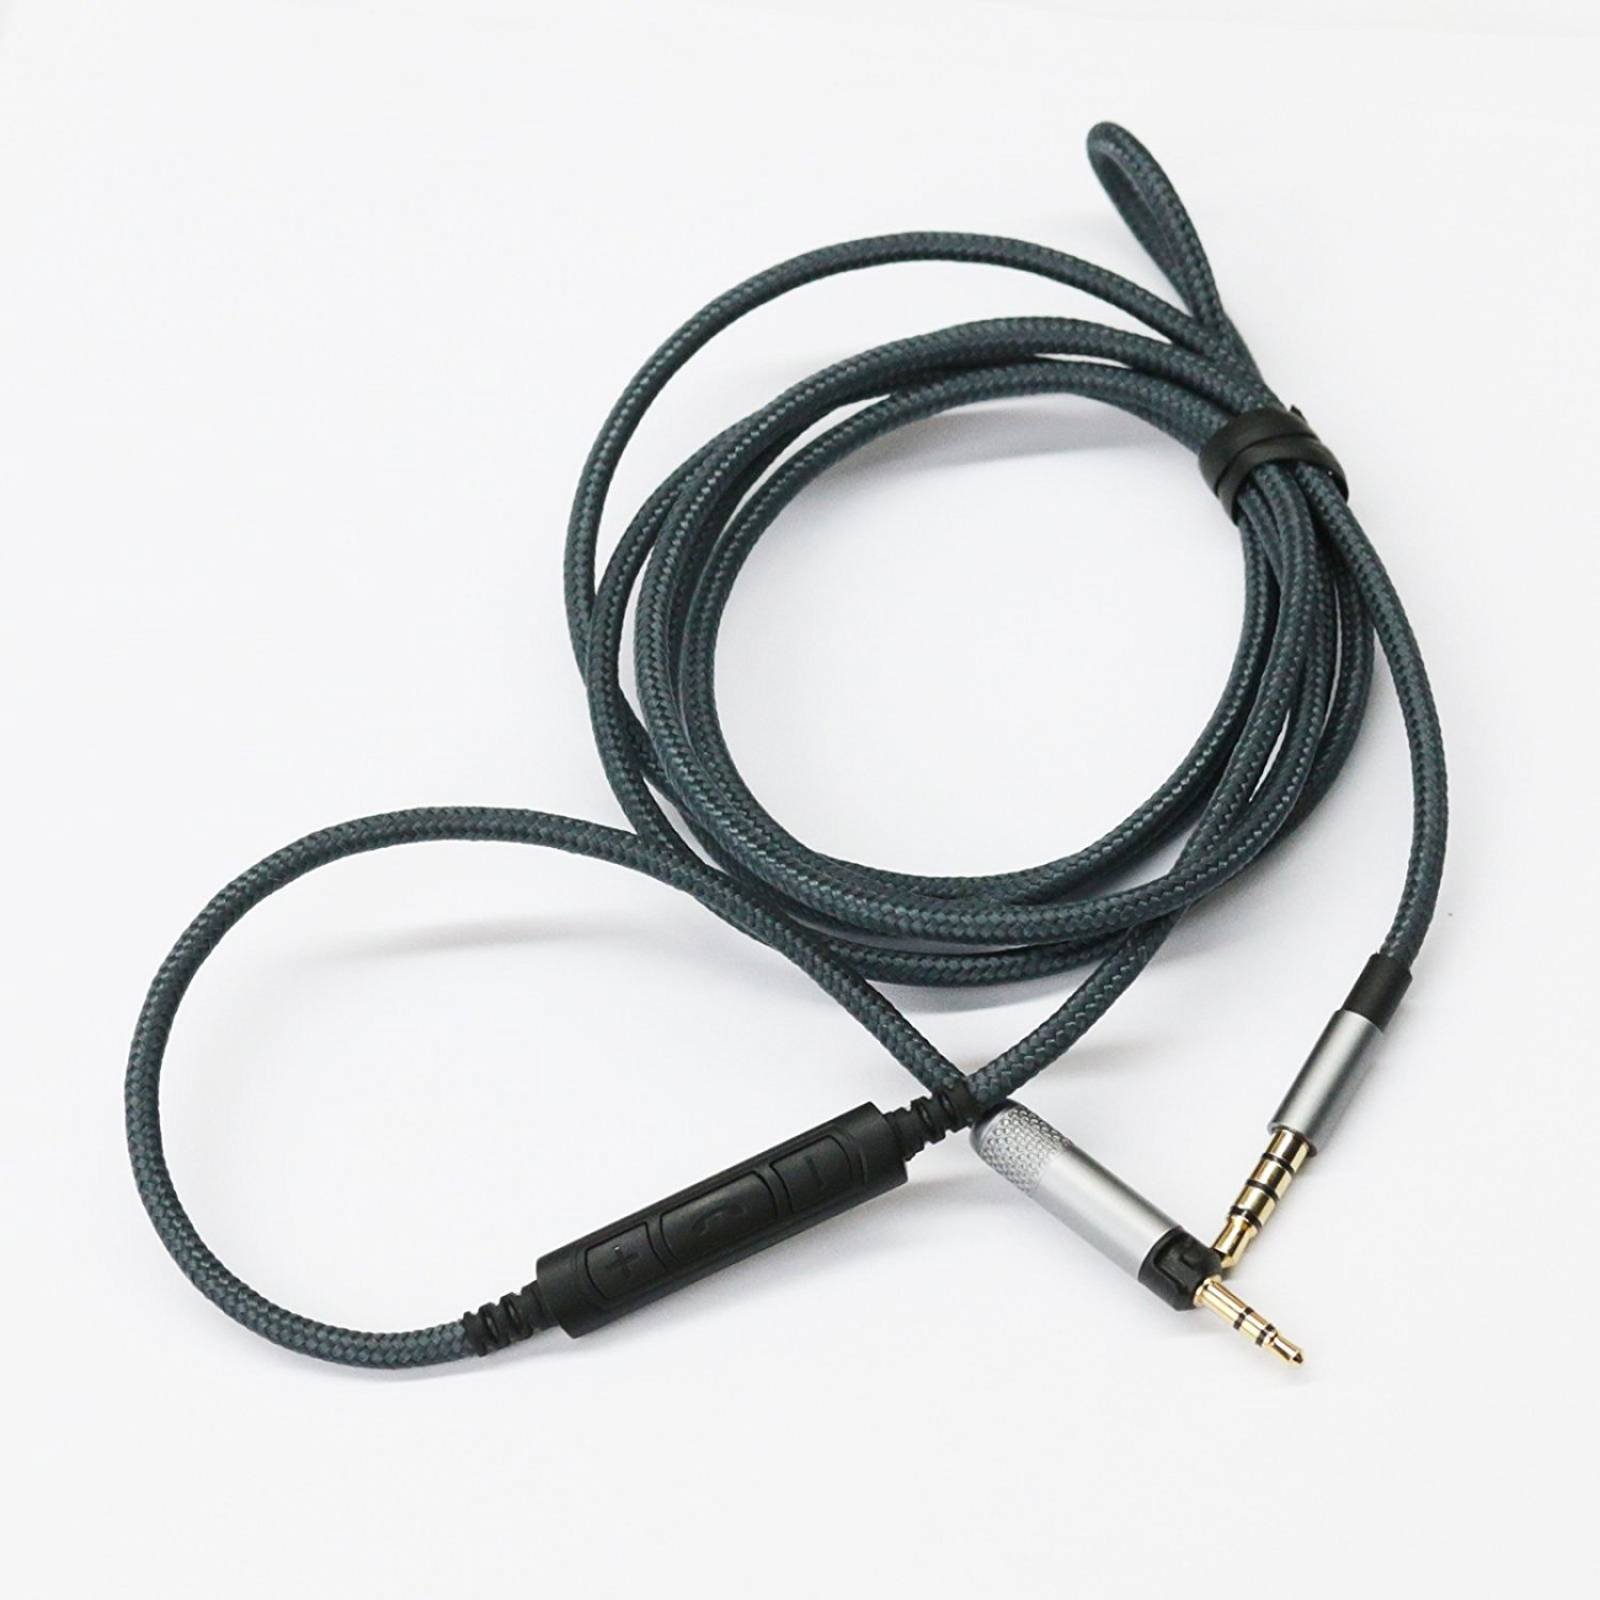 NEOMUSICIA Cable Audio Technica ATH-M50x/ATH-M40x/ATH-M70x/K